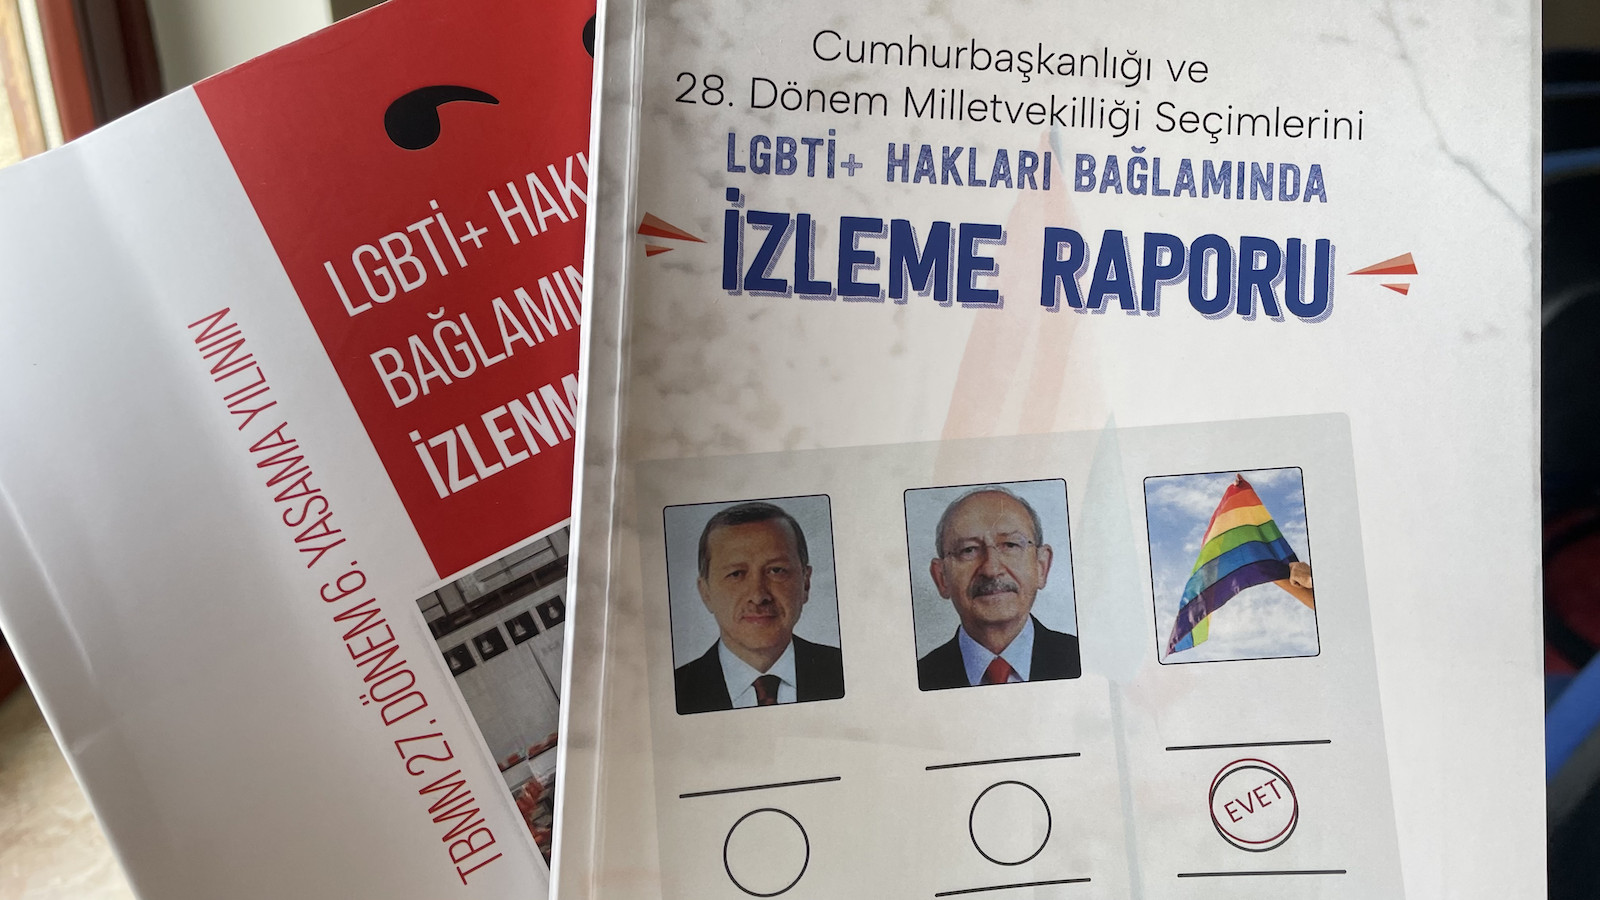 Seçimlerin özeti: Erdoğan her gün LGBTİ+’ları hedef alırken Kılıçdaroğlu, Buldan ve Sancar sustu | Kaos GL - LGBTİ+ Haber Portalı Haber